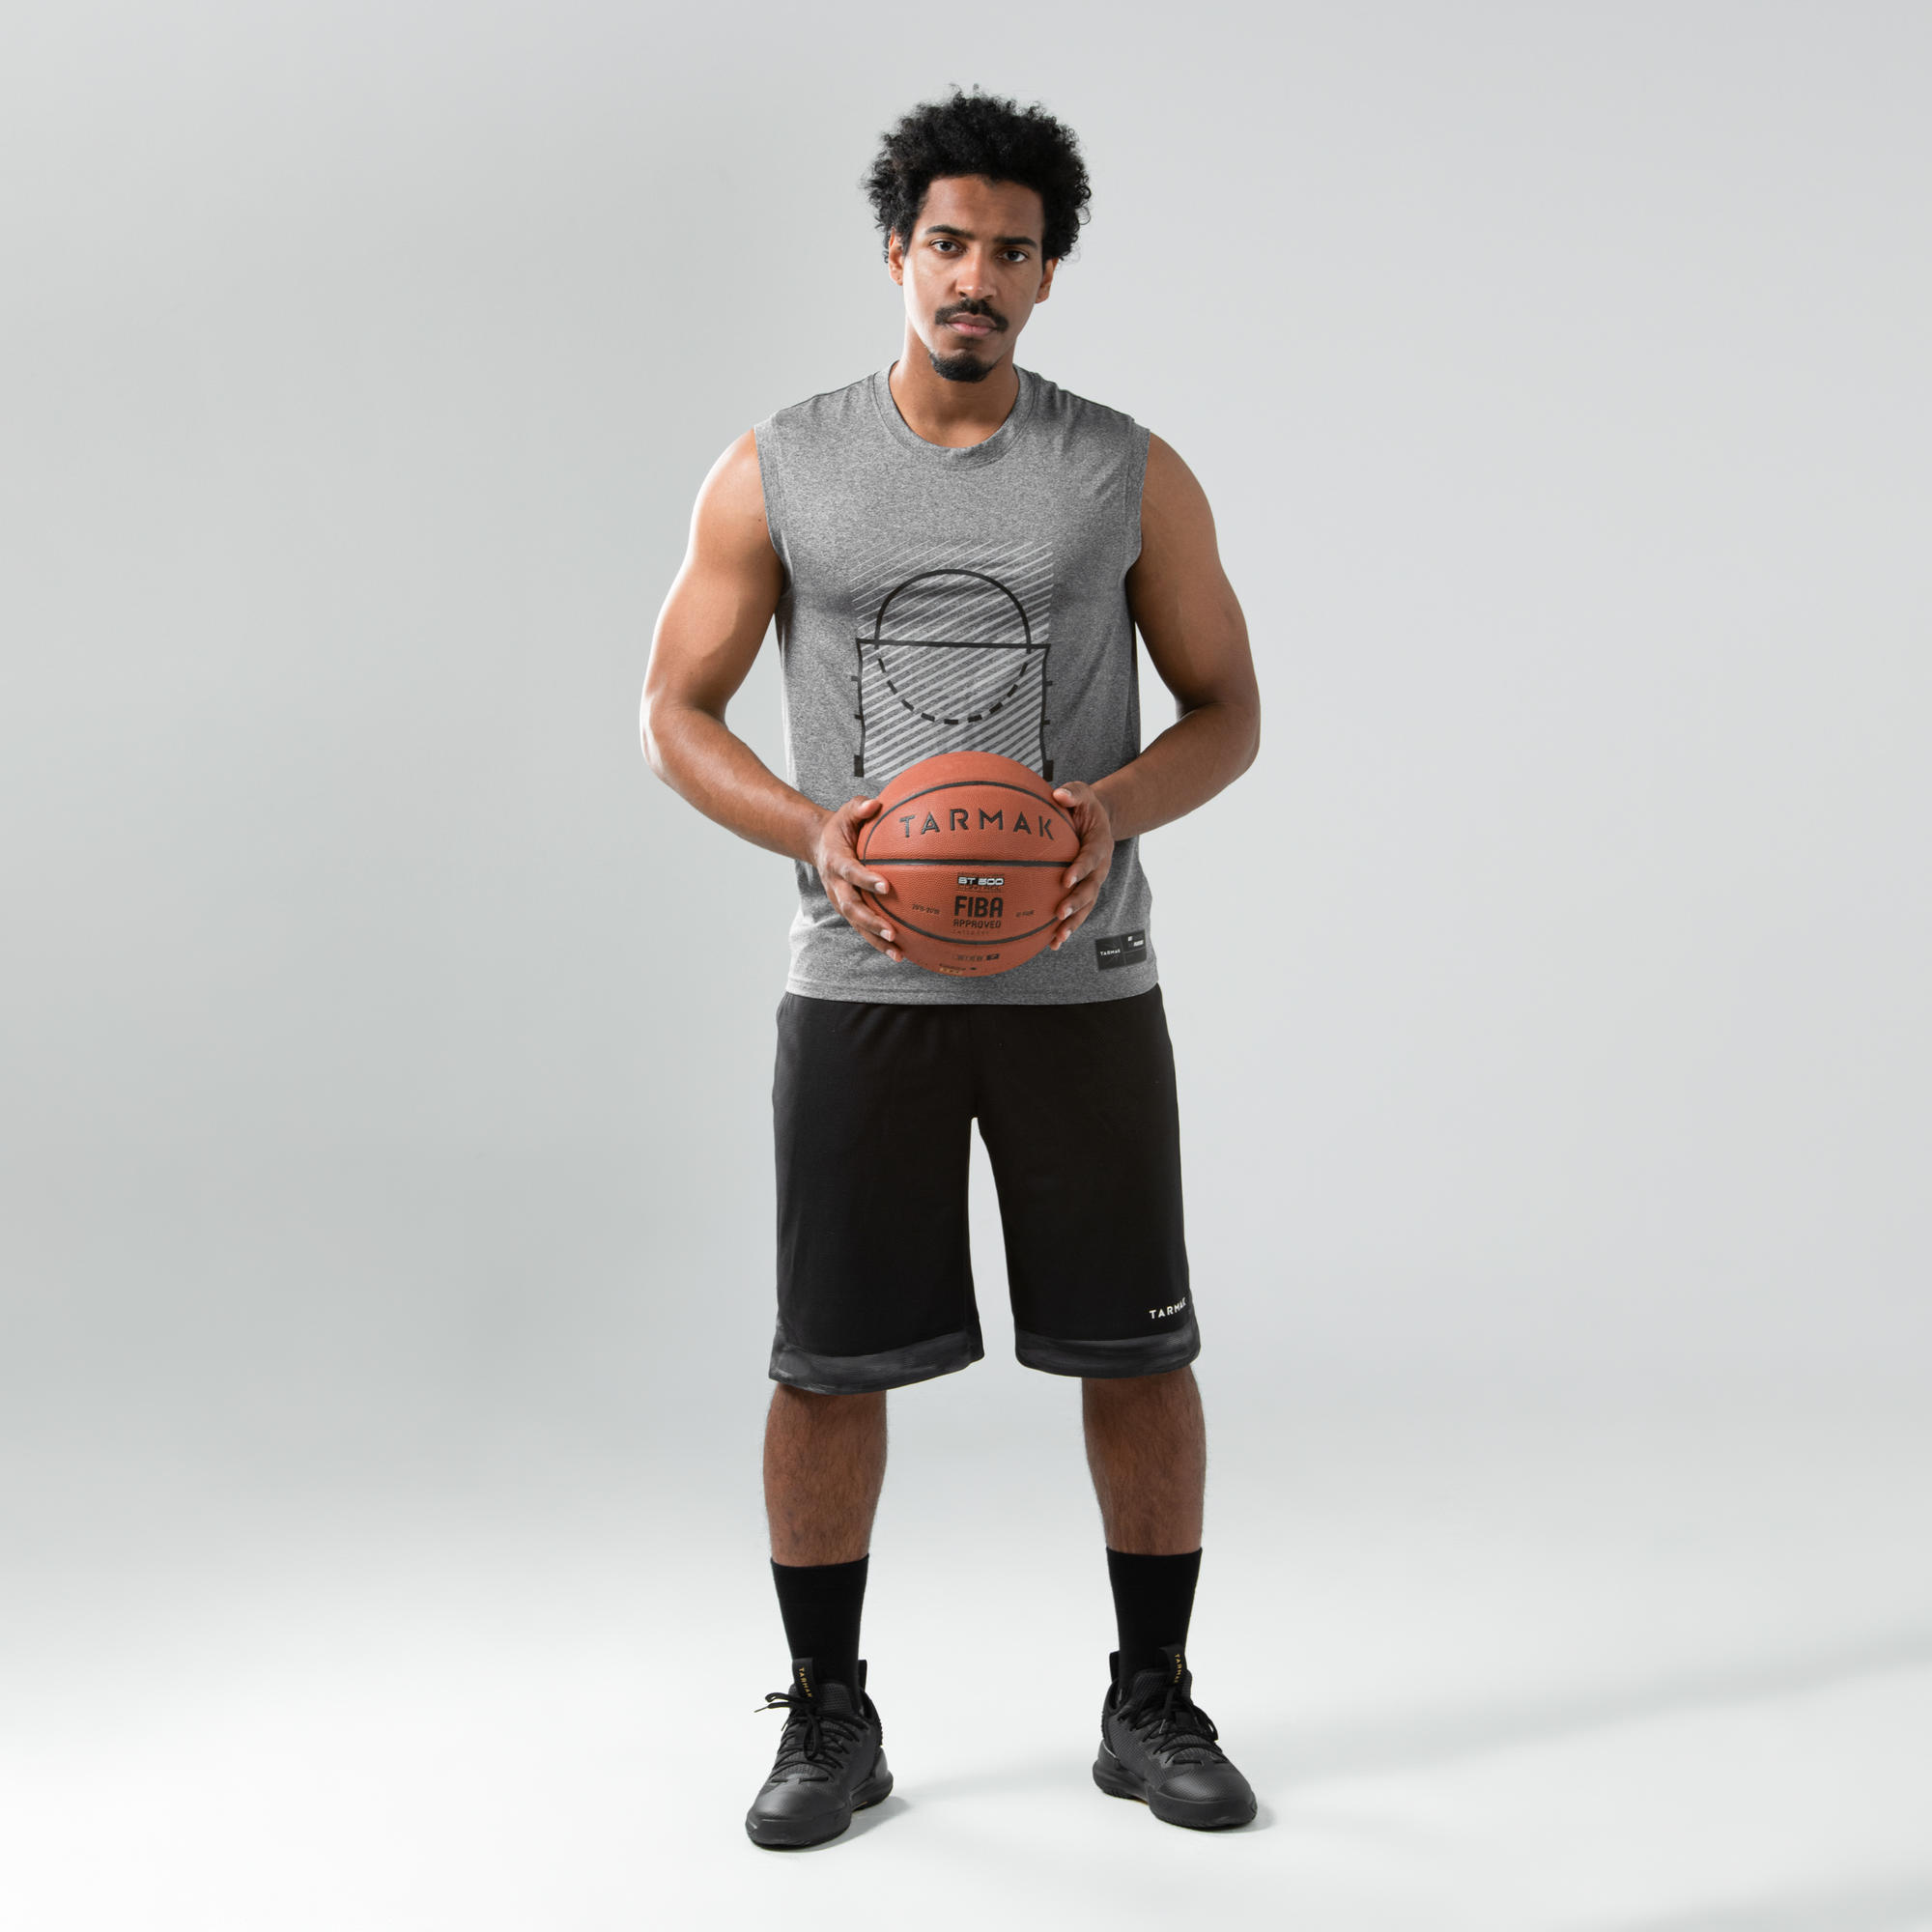 sleeveless basketball jersey